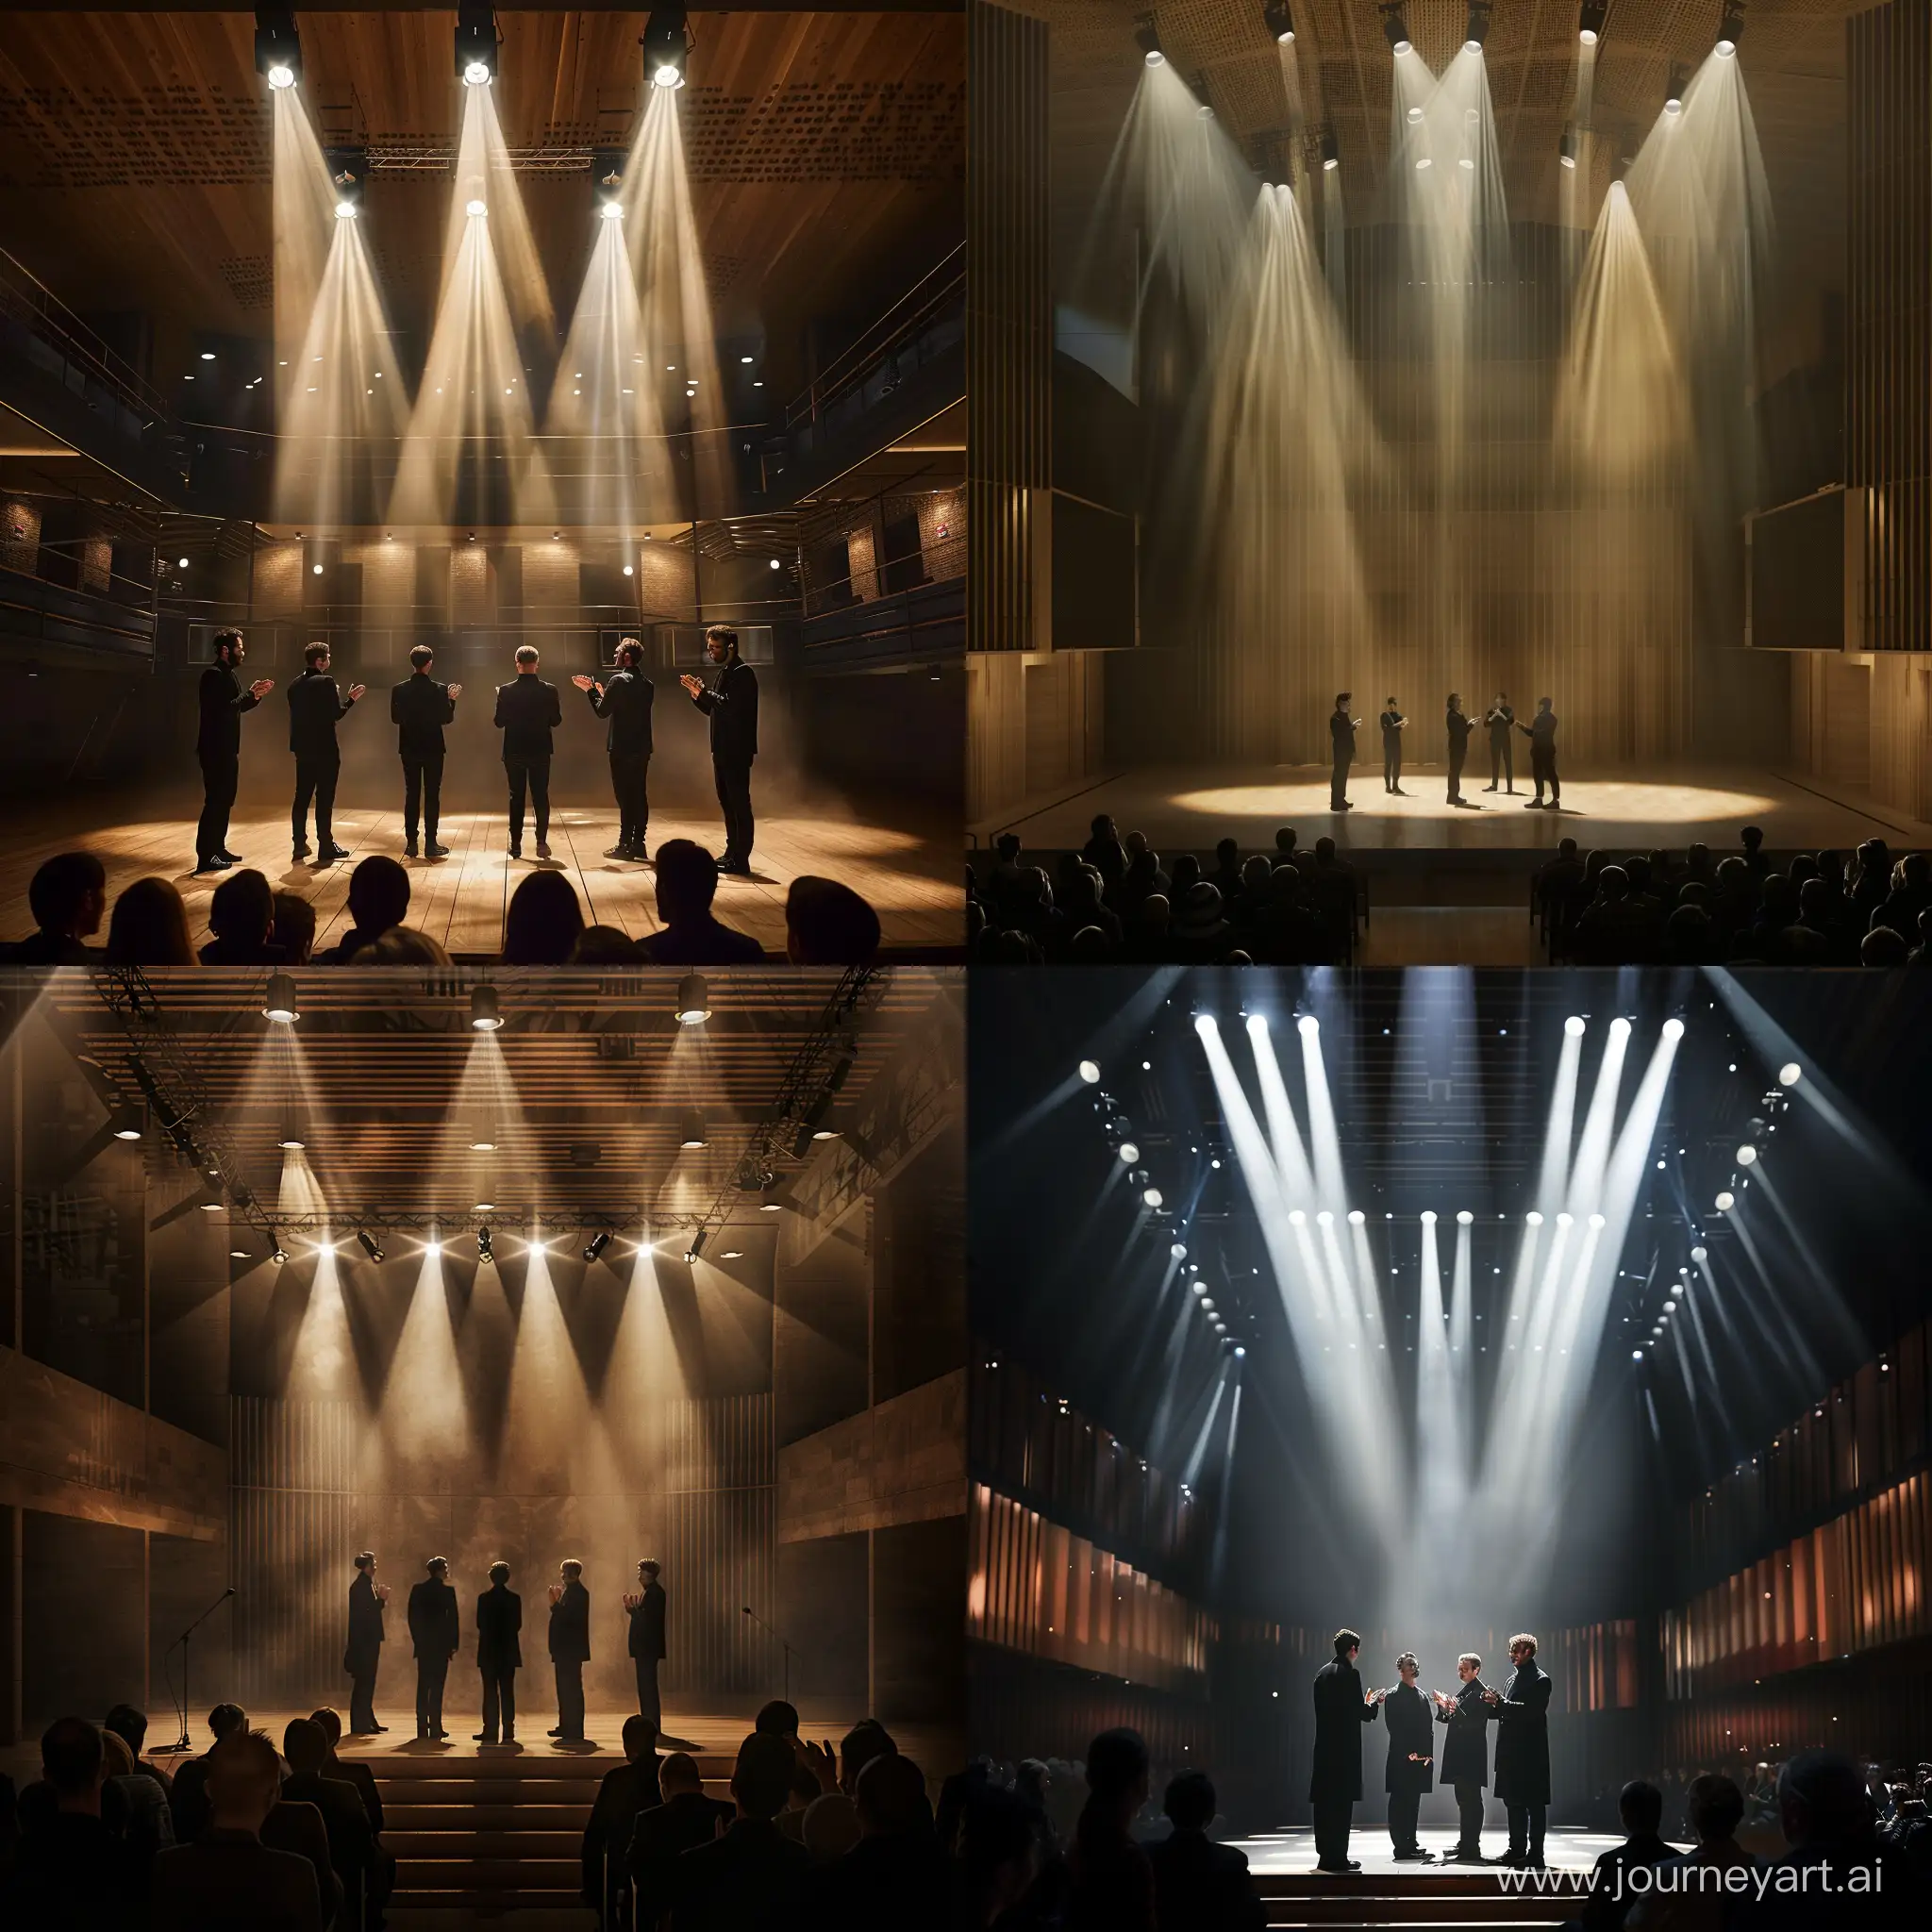 4 актера в черной одежде стоят на сцене современного зала, сцену освещают прожектора, зрители хлопают, арт, реалистичный